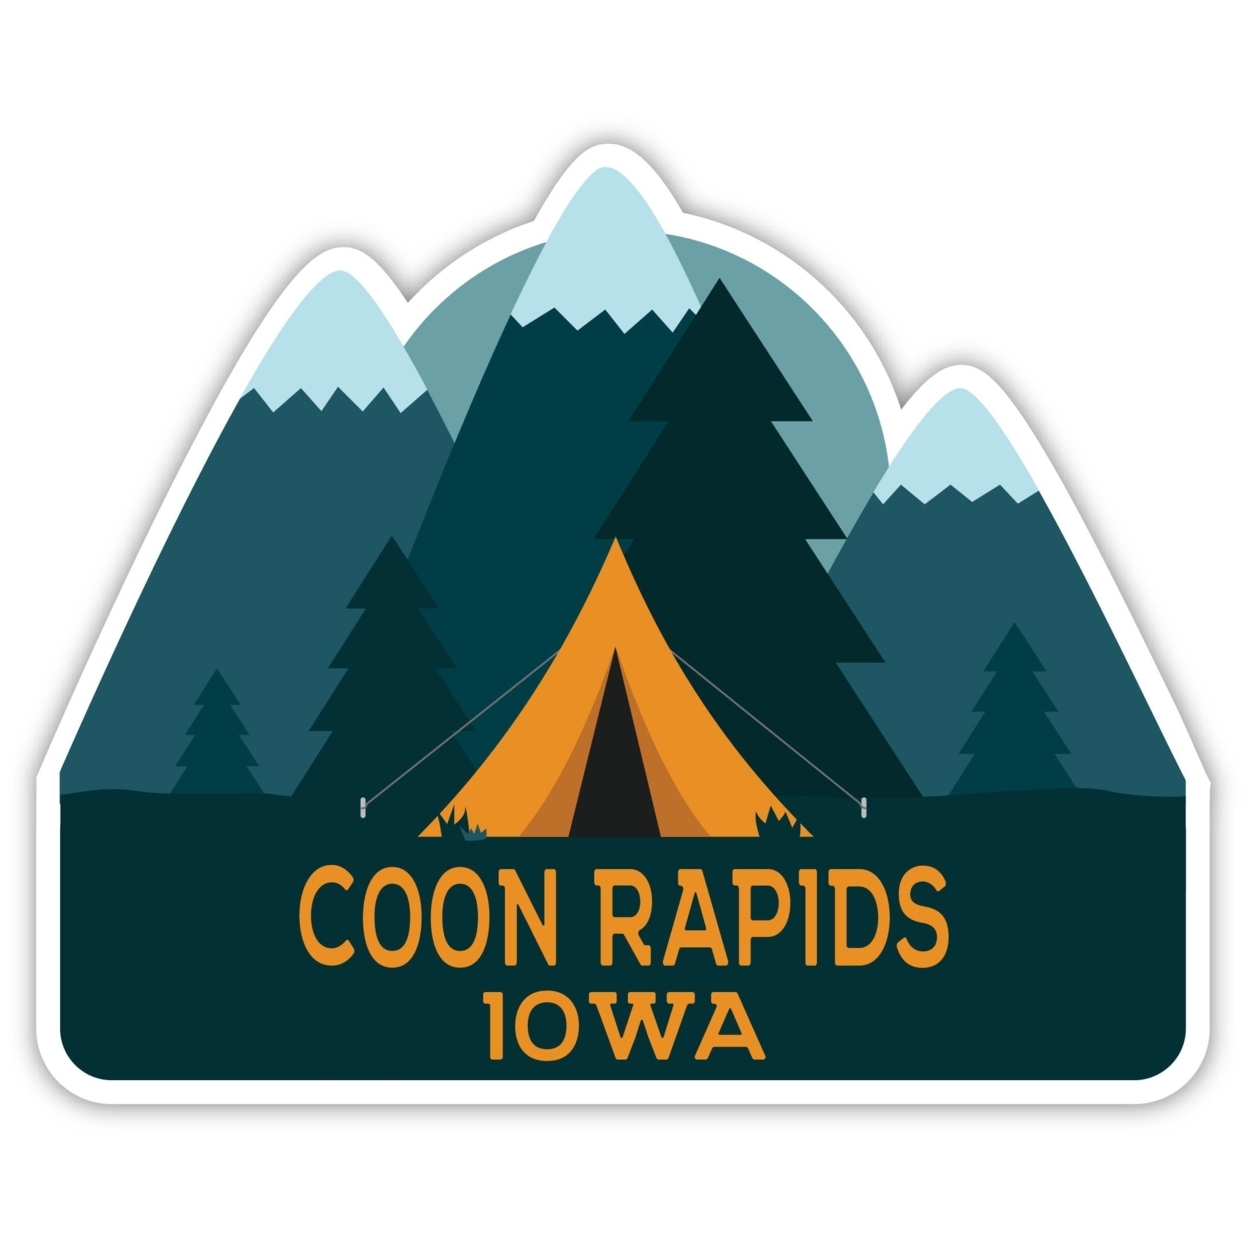 Coon Rapids Iowa Souvenir Decorative Stickers (Choose Theme And Size) - Single Unit, 8-Inch, Tent